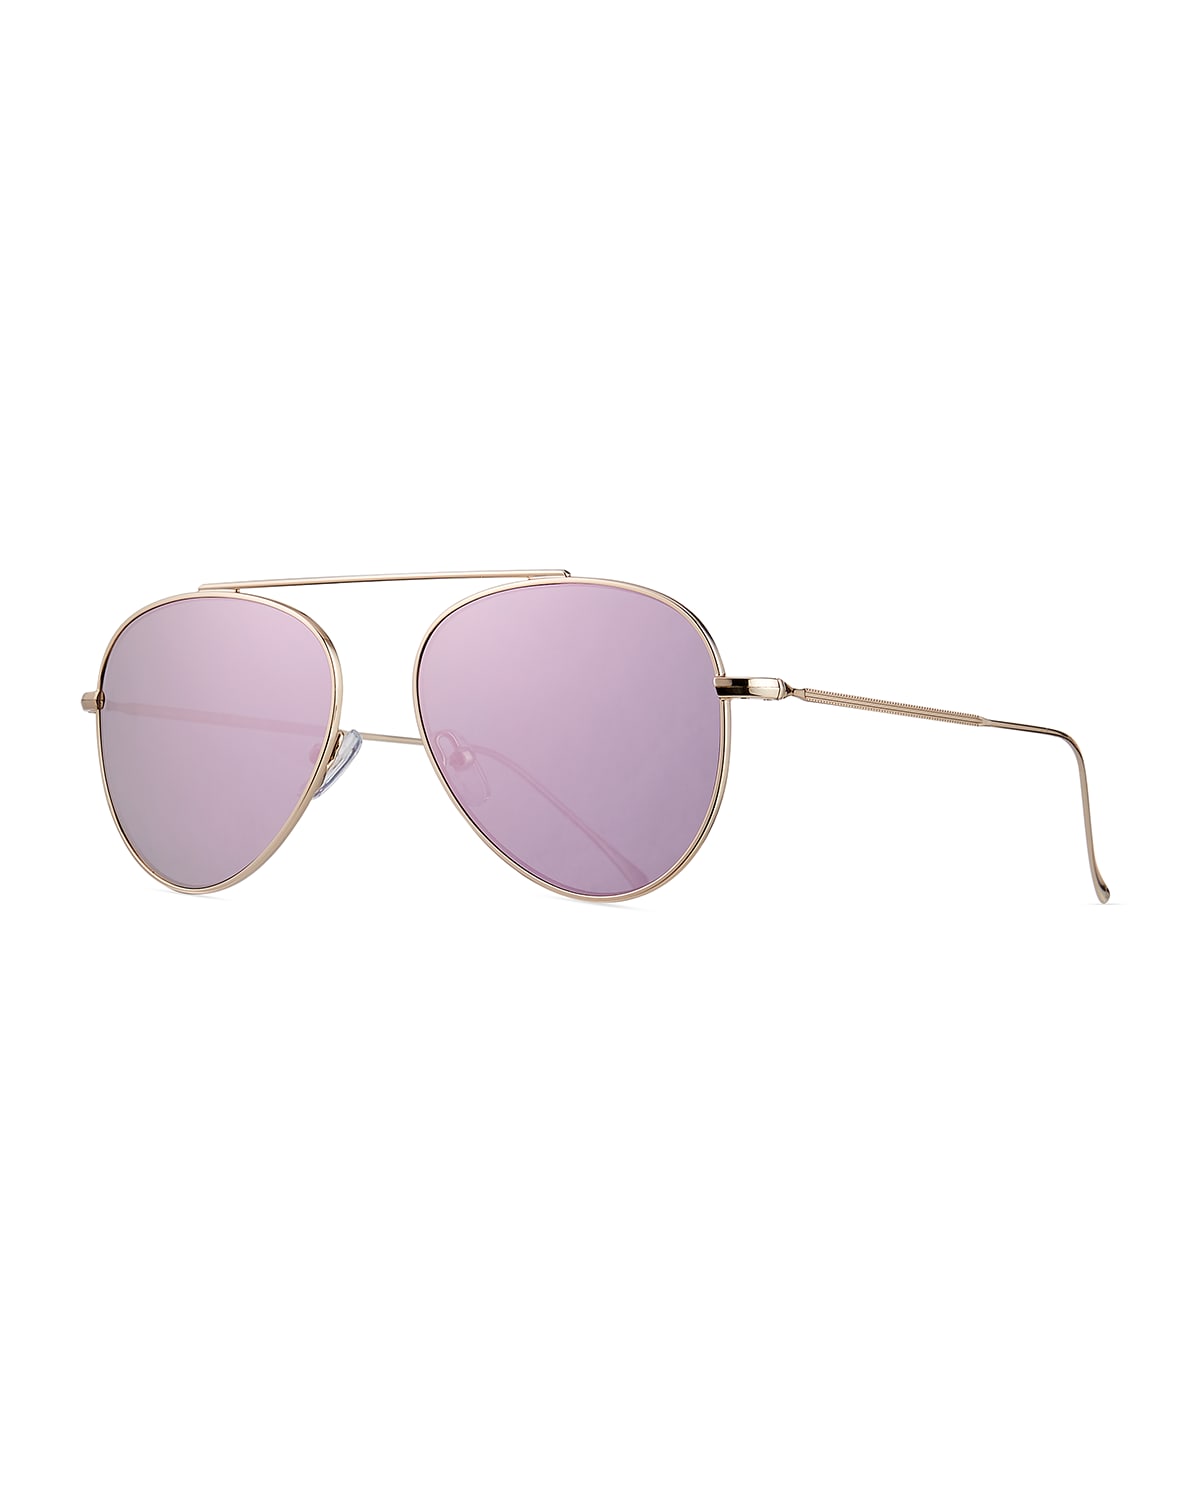 Dorchester Mirrored Aviator Sunglasses